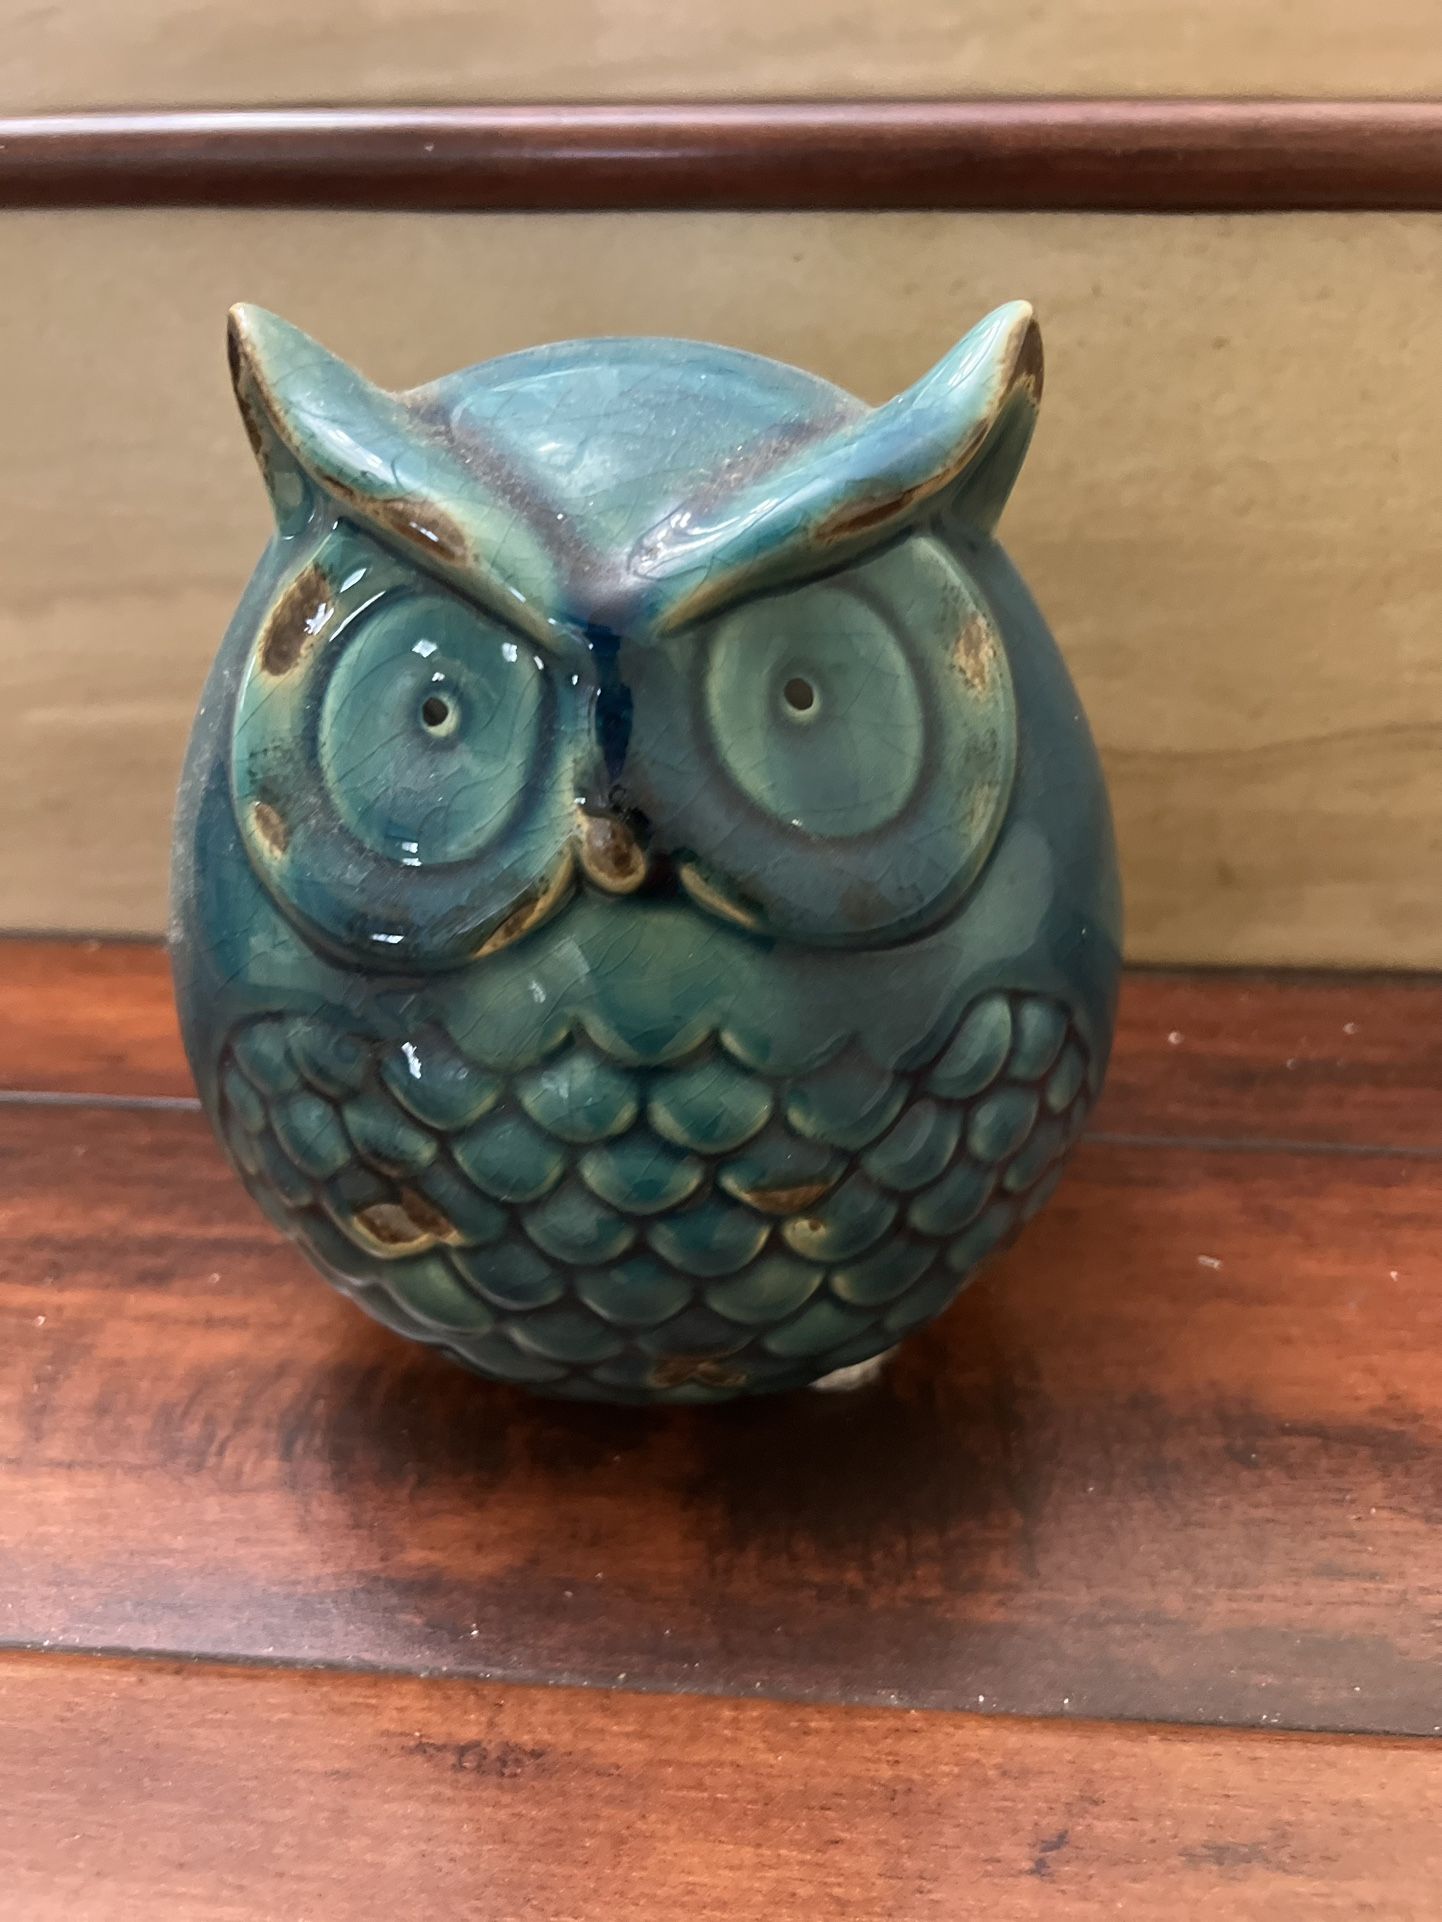 Antique Style Ceramic Decorative owl